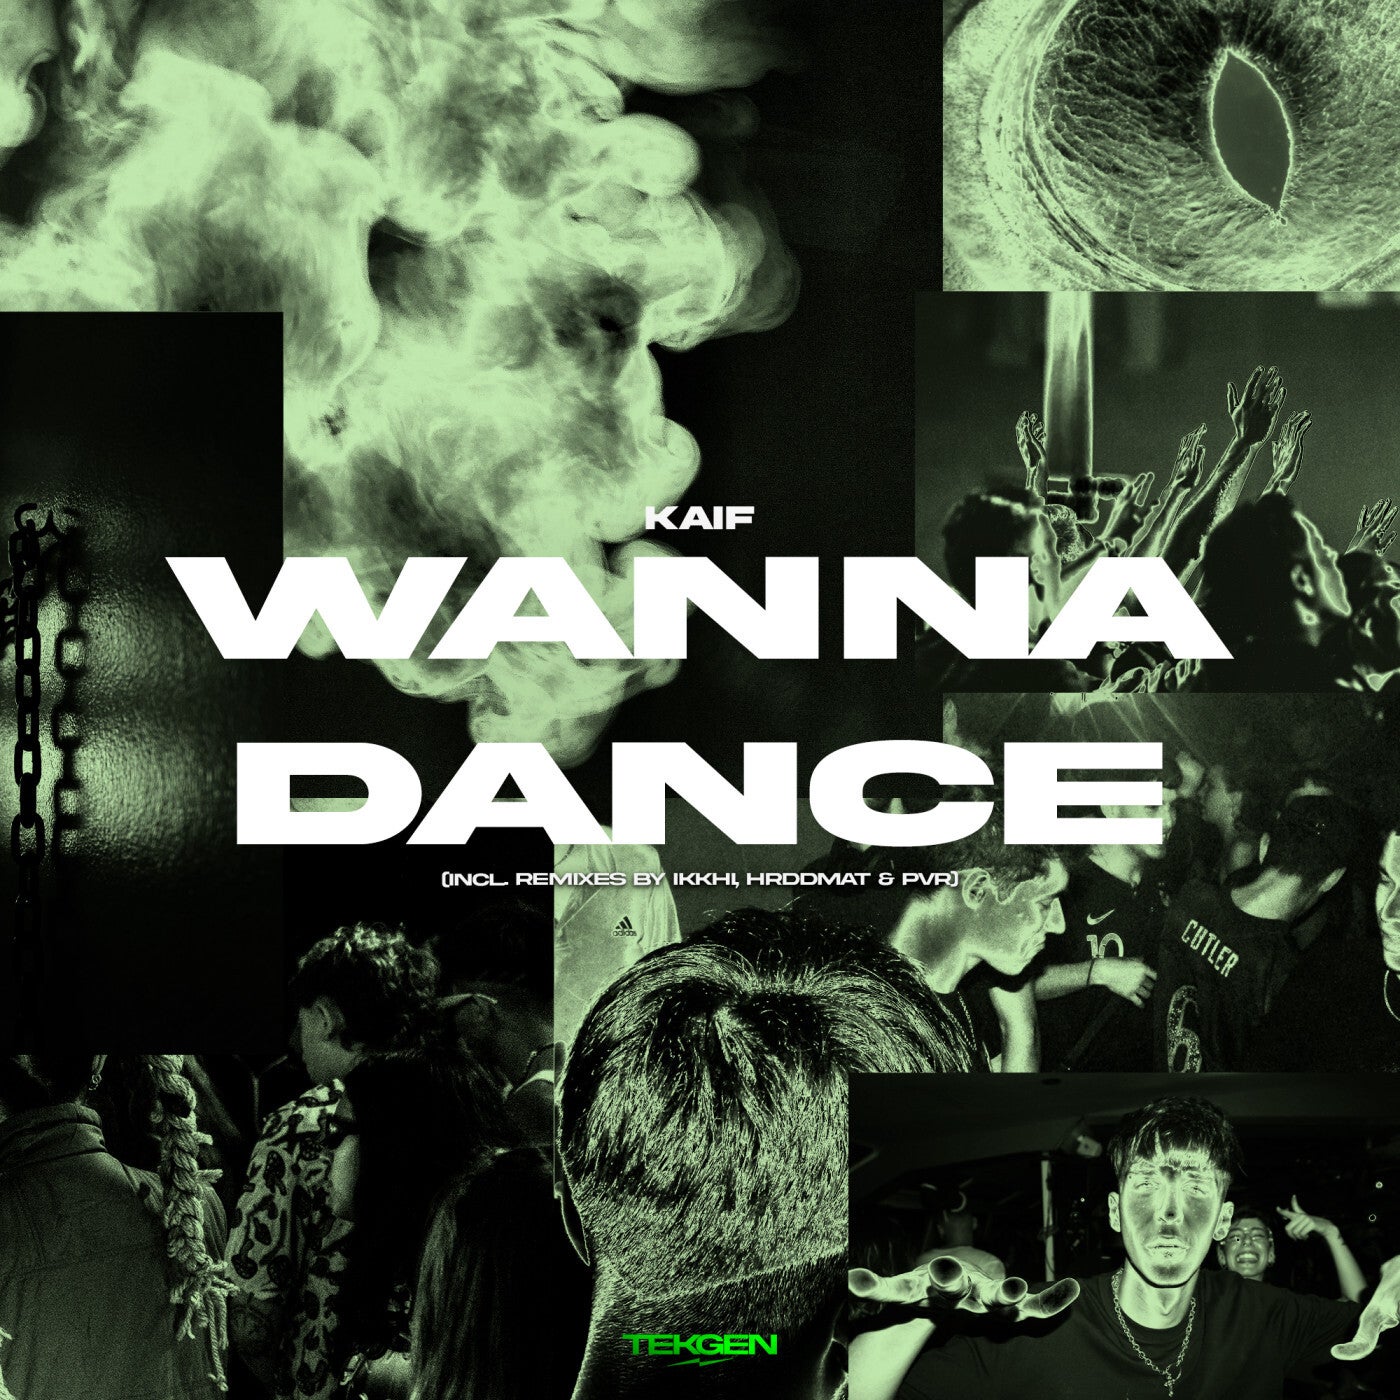 Cover - Kaif - Wanna Dance (PVR Remix)